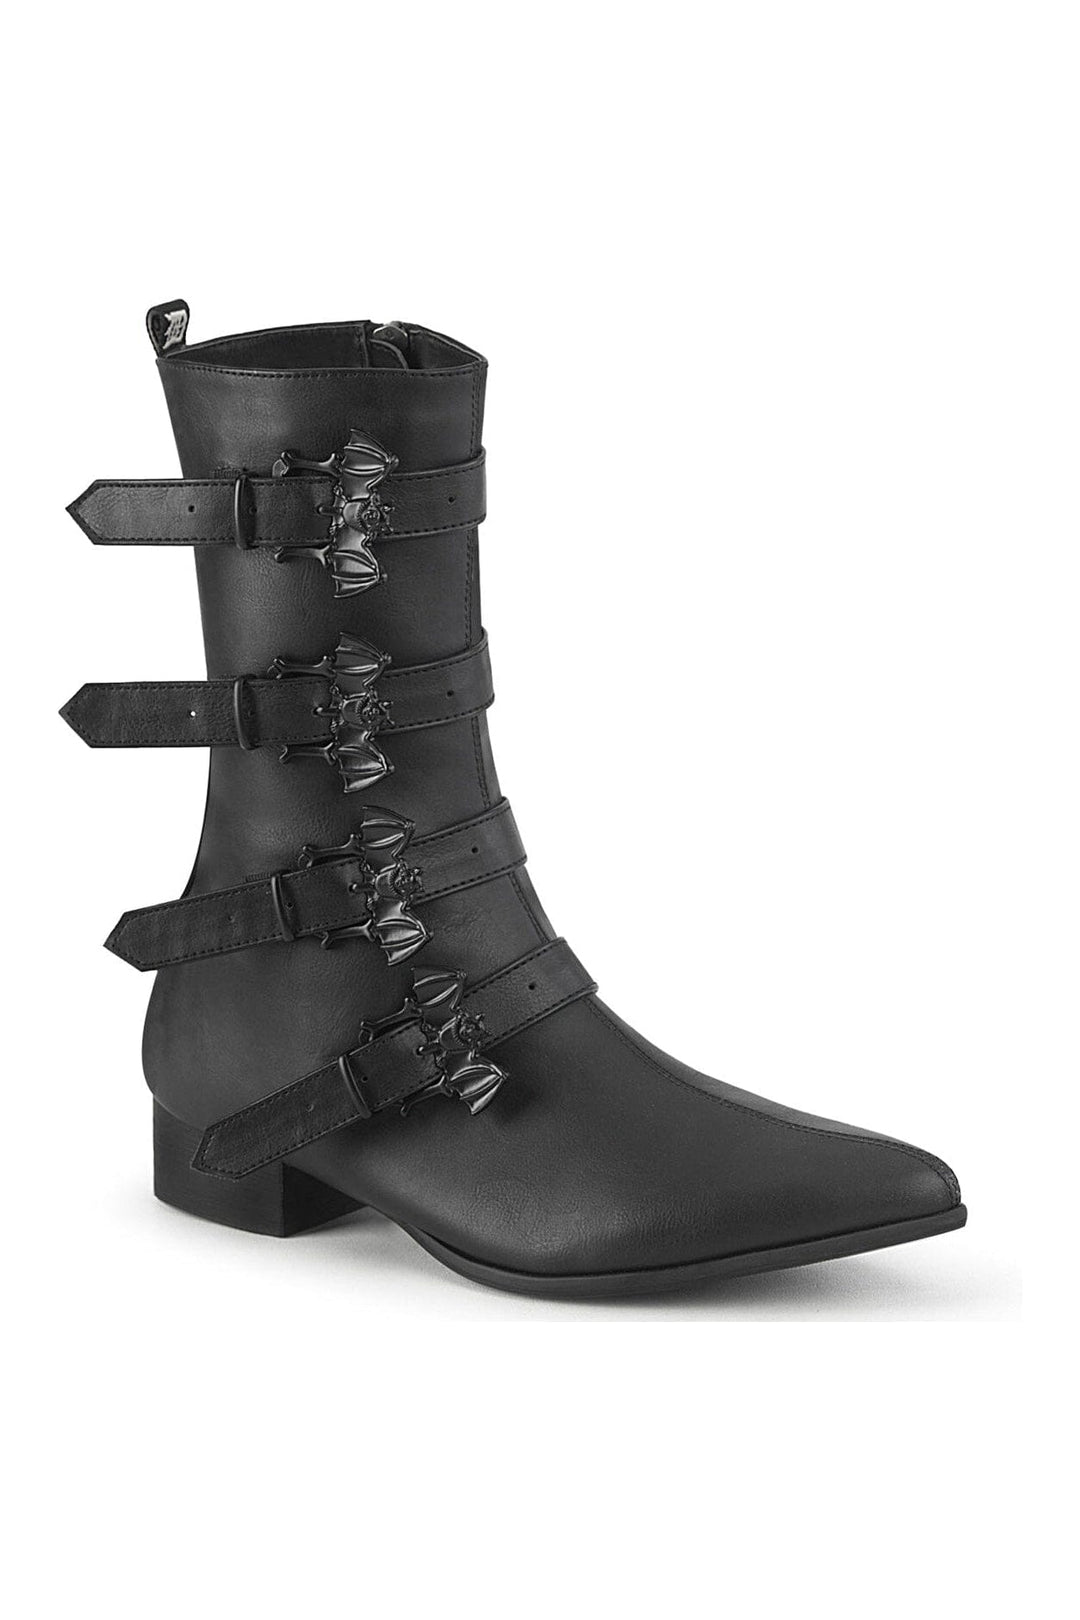 WARLOCK-110-B Black Vegan Leather Knee Boot-Knee Boots-Demonia-Black-10-Vegan Leather-SEXYSHOES.COM